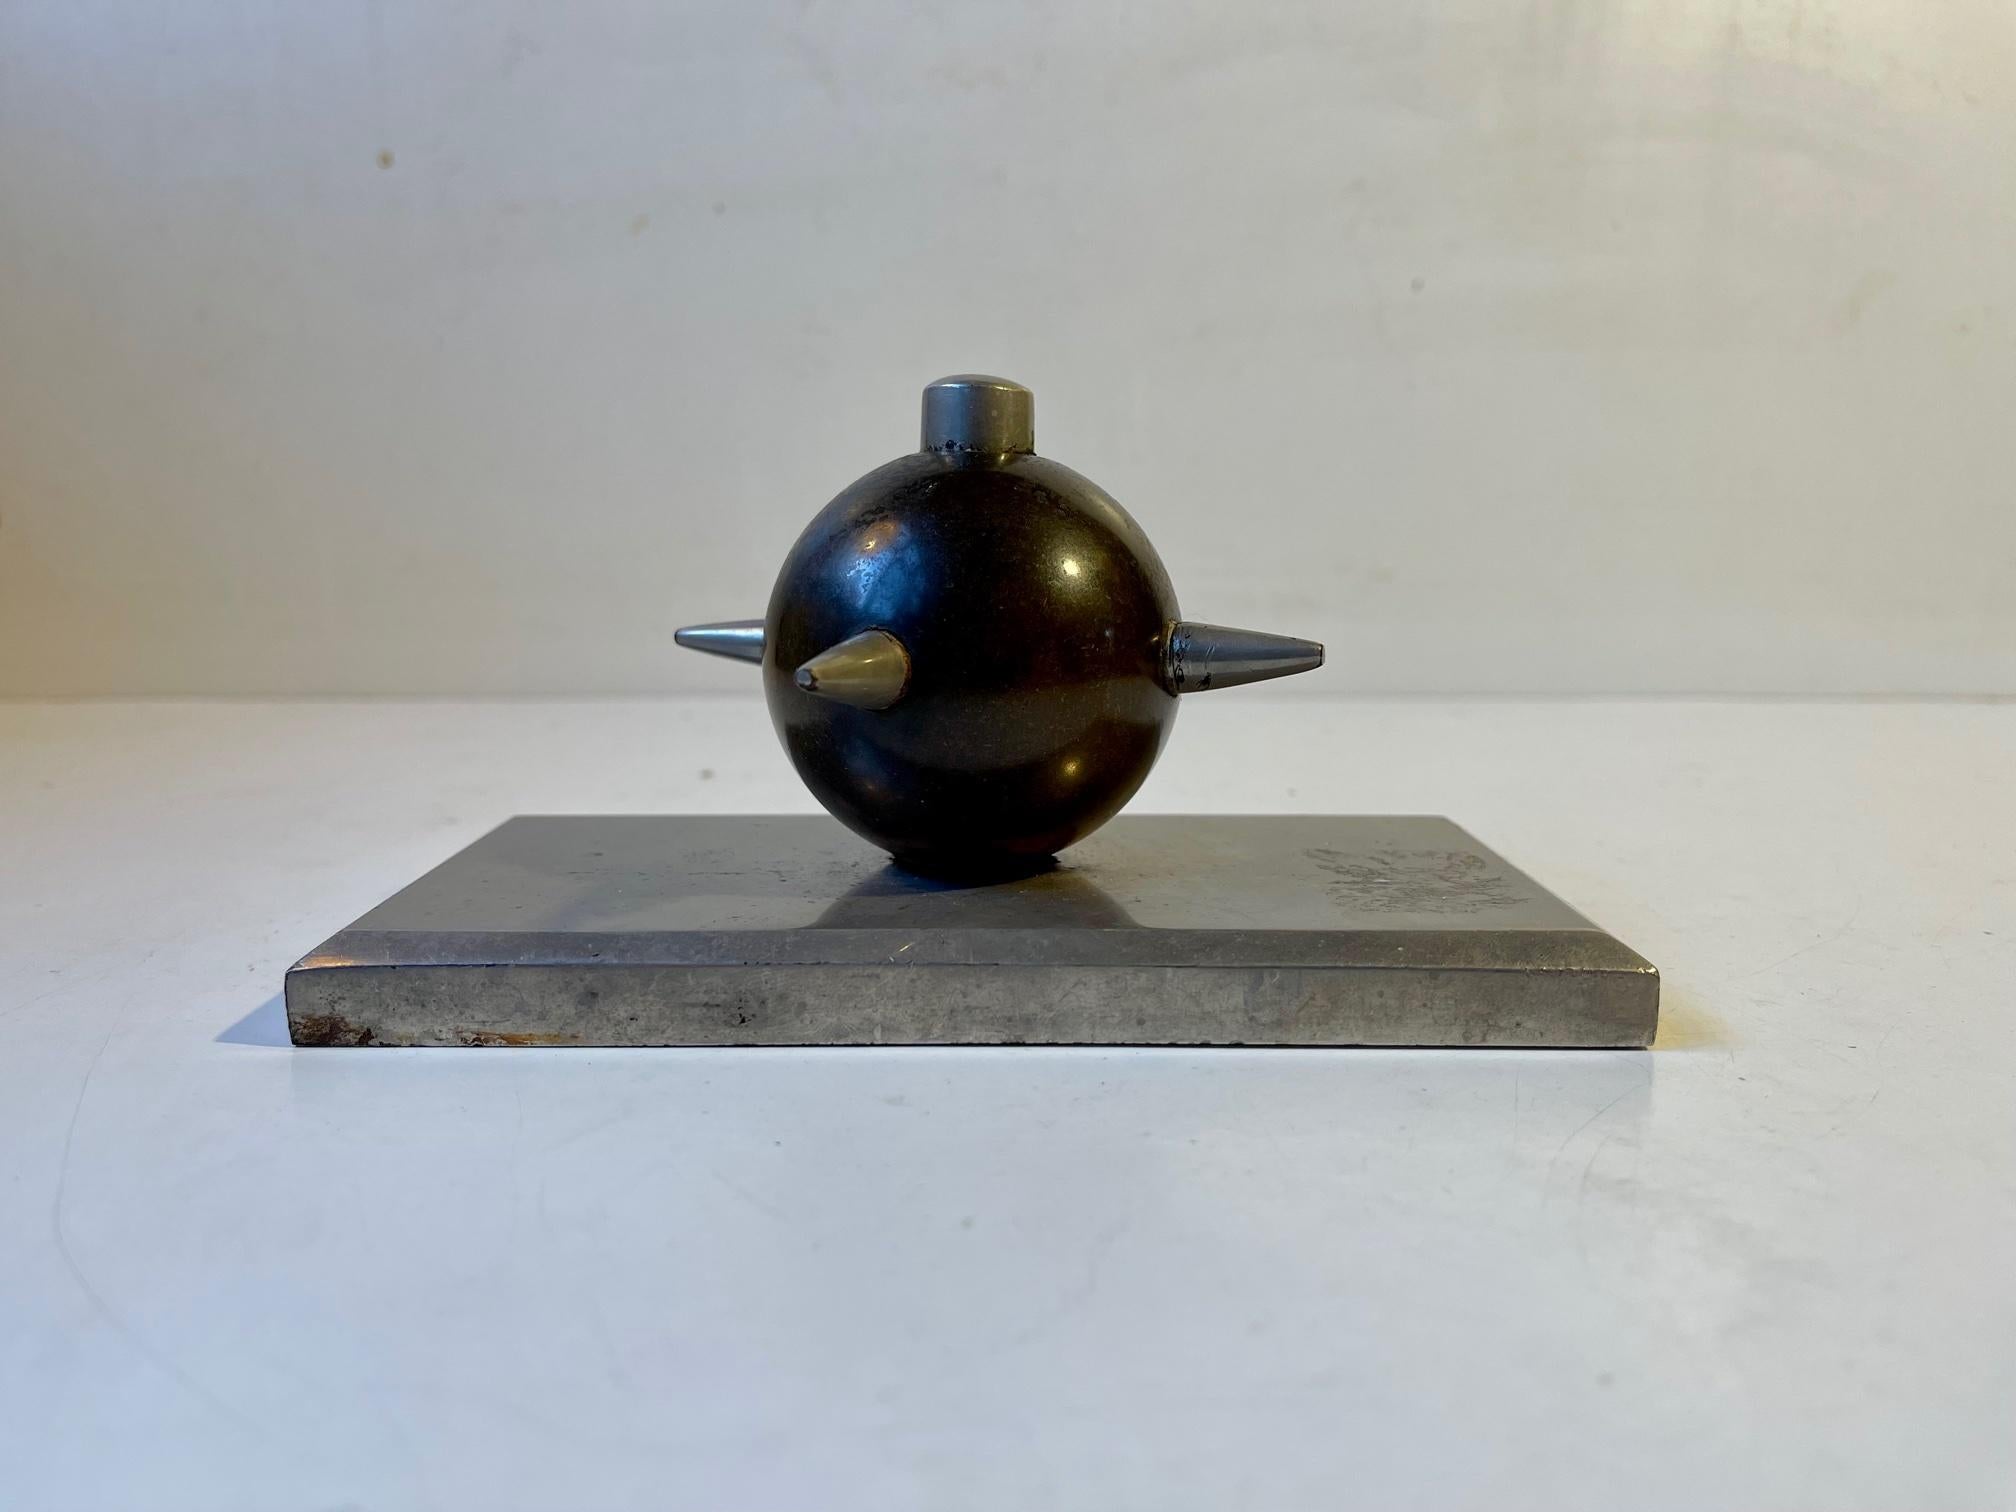 Mit einem Gewicht von über 2 kg wurde diese kleine, einzigartige Schreibtischskulptur in den 1930er Jahren anonym in Dänemark hergestellt. Der dicke Sockel aus rostfreiem Stahl trägt eine Kanonenkugel aus Bronze aus dem 18. oder 19. Jahrhundert, die